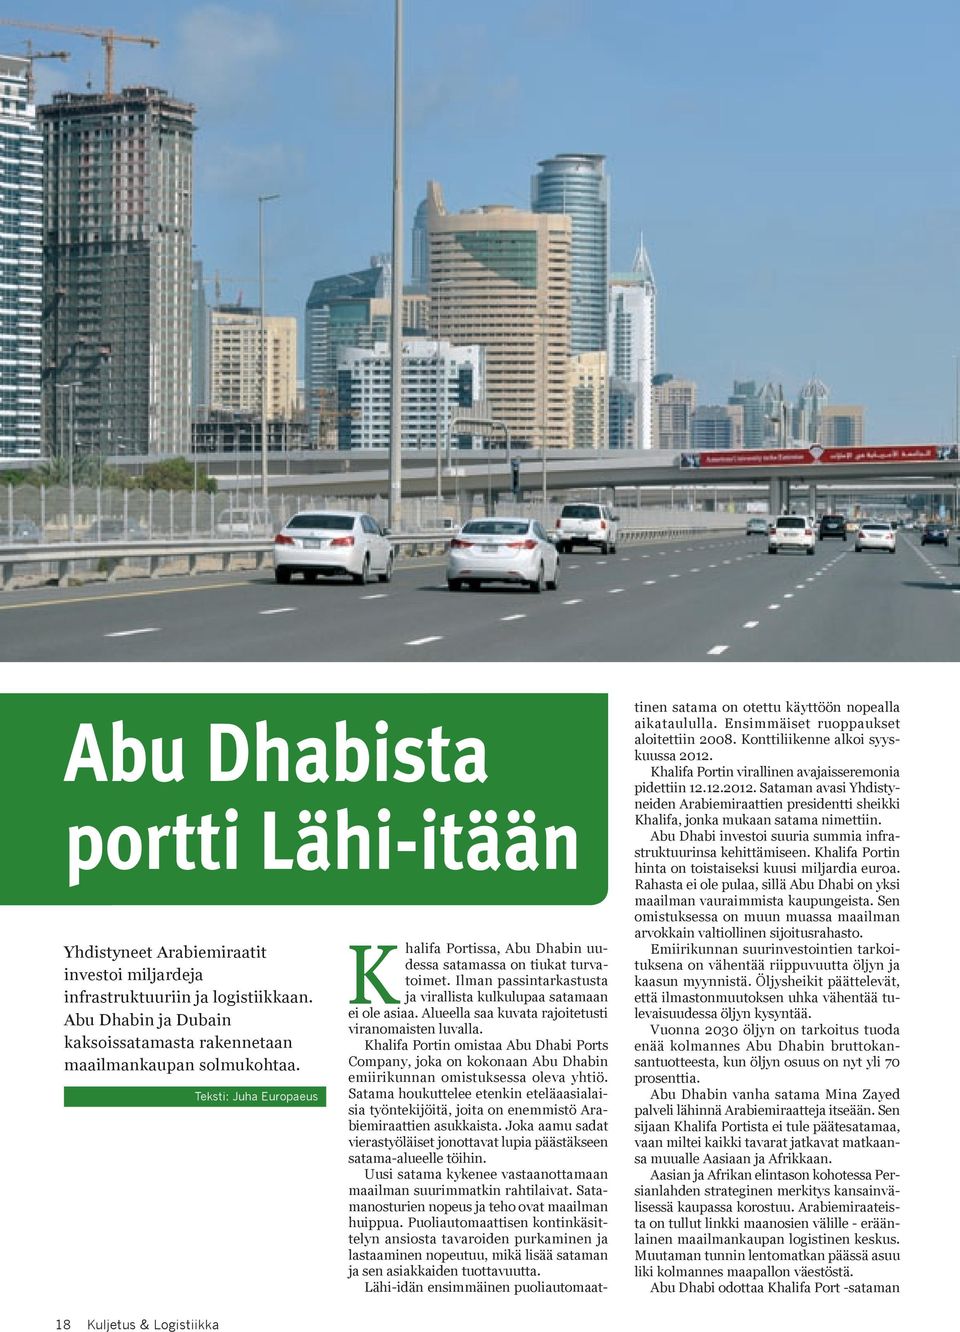 Alueella saa kuvata rajoitetusti viranomaisten luvalla. Khalifa Portin omistaa Abu Dhabi Ports Company, joka on kokonaan Abu Dhabin emiirikunnan omistuksessa oleva yhtiö.